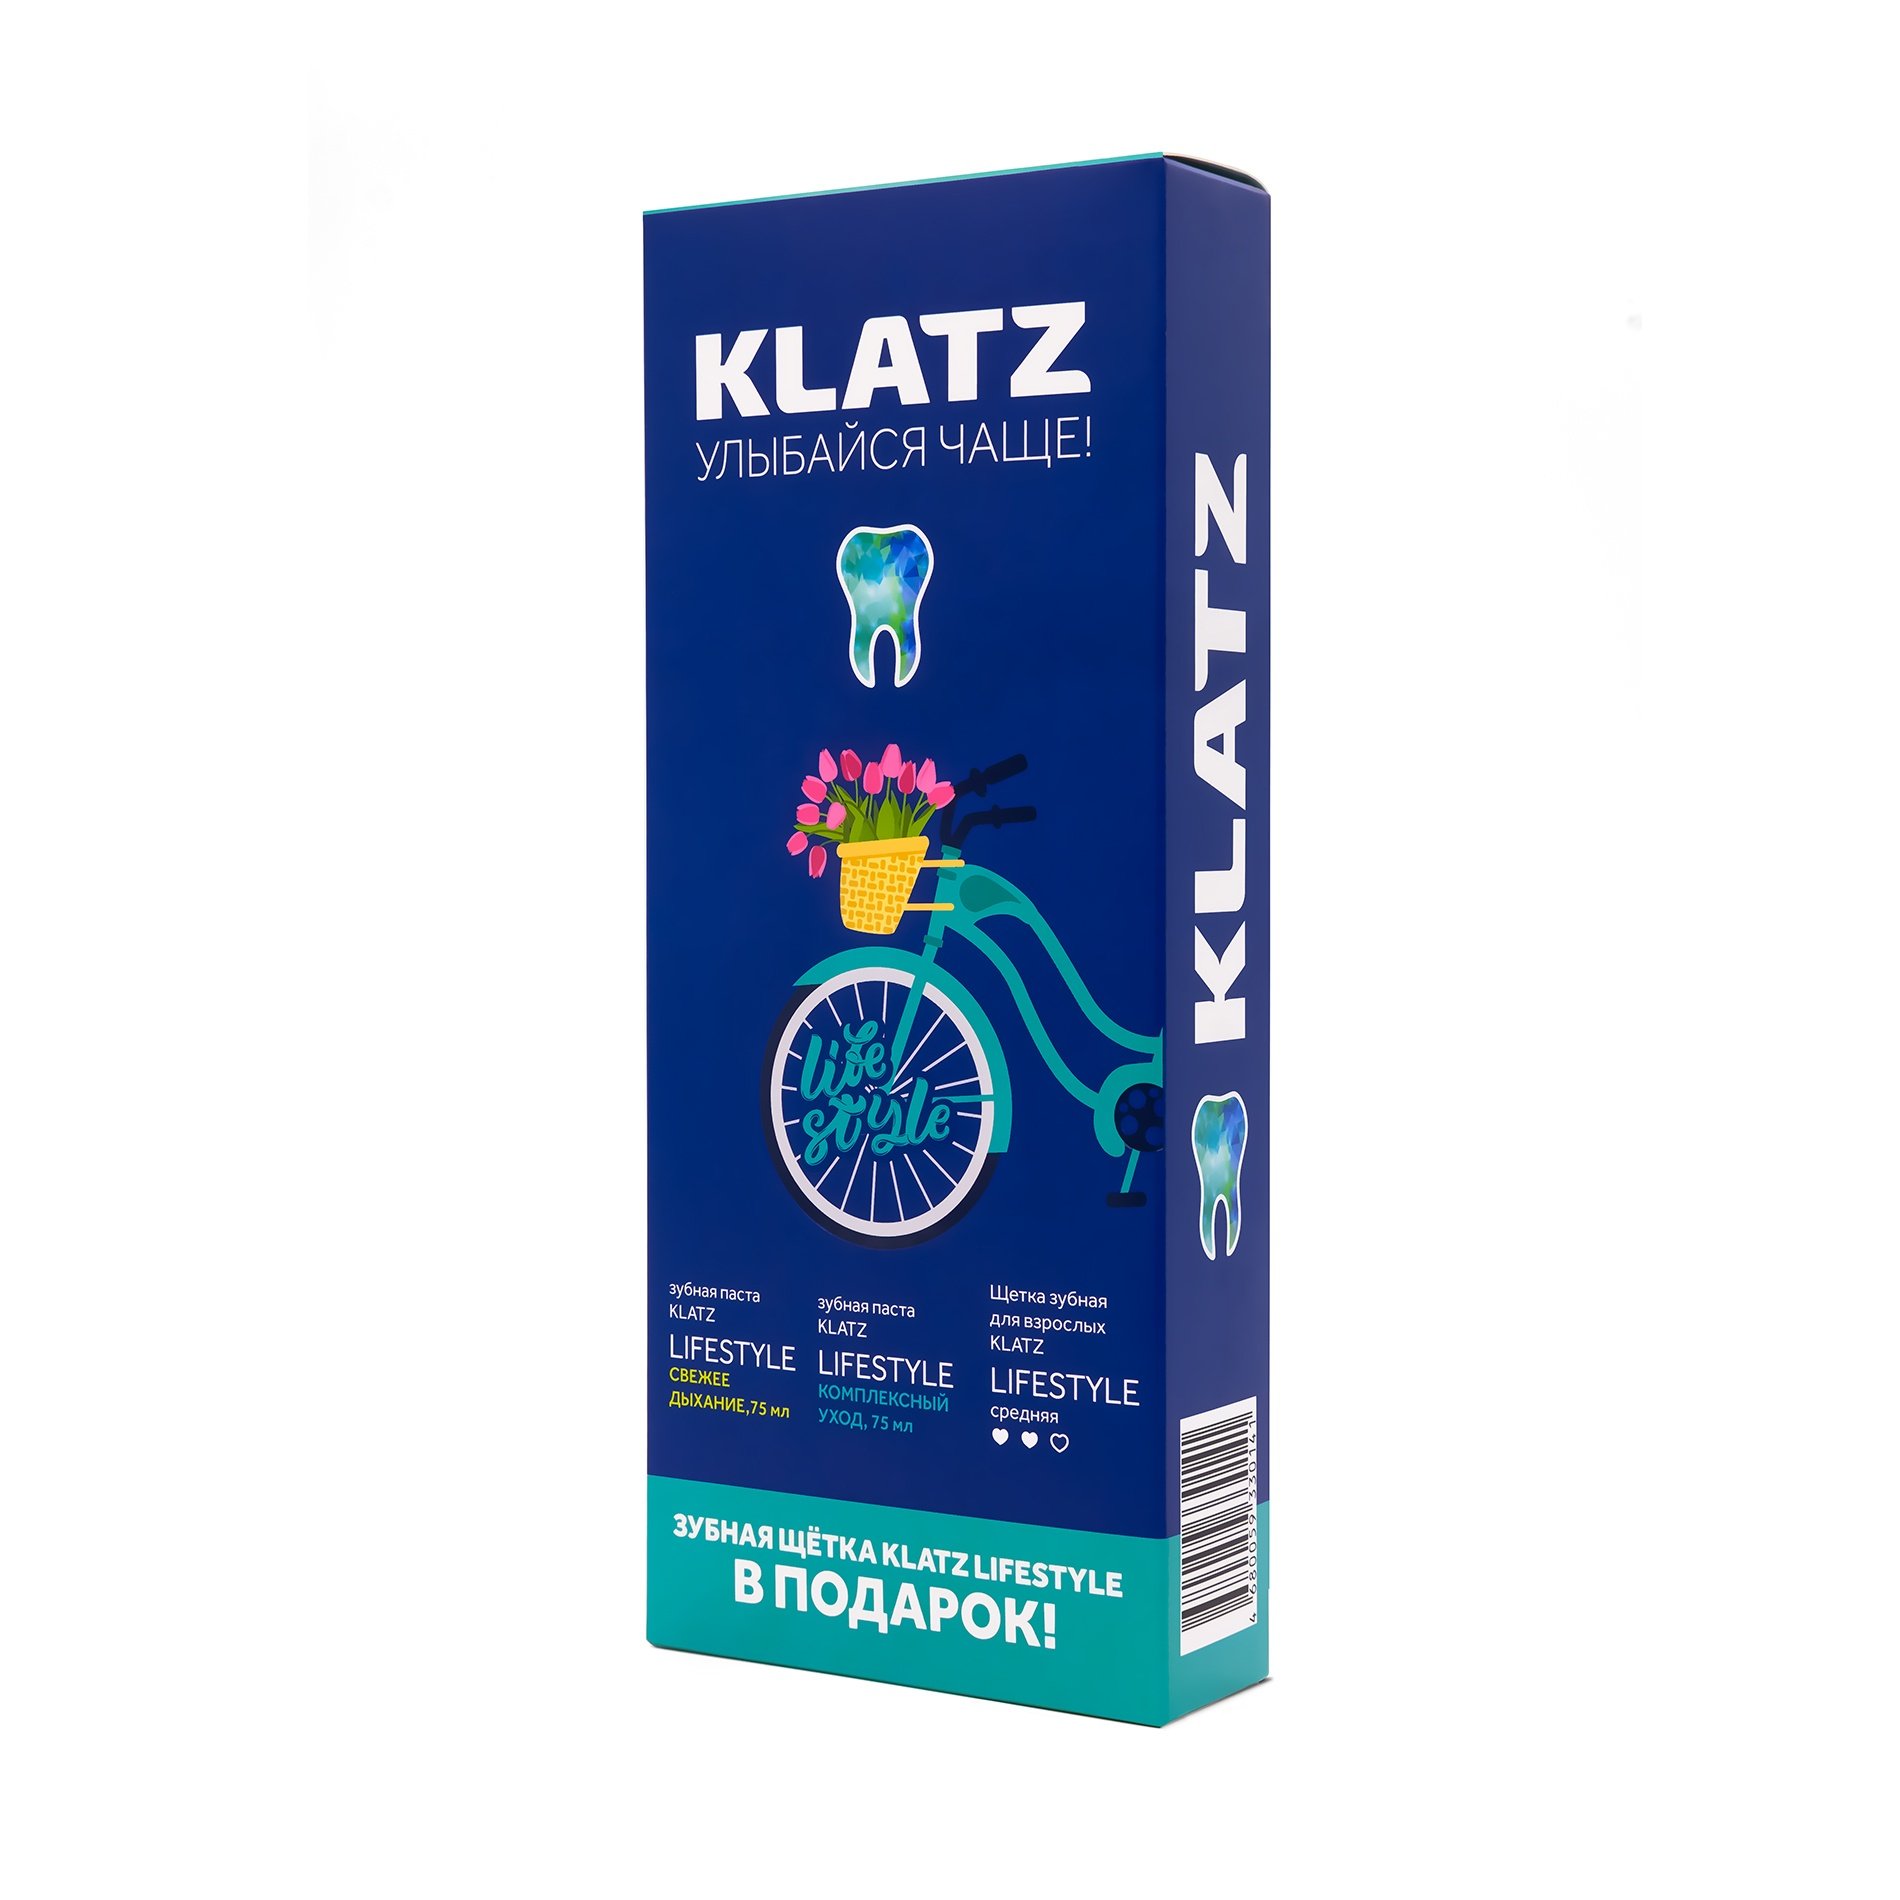 Toothpaste Gift set  KLATZ LIFESTYLE